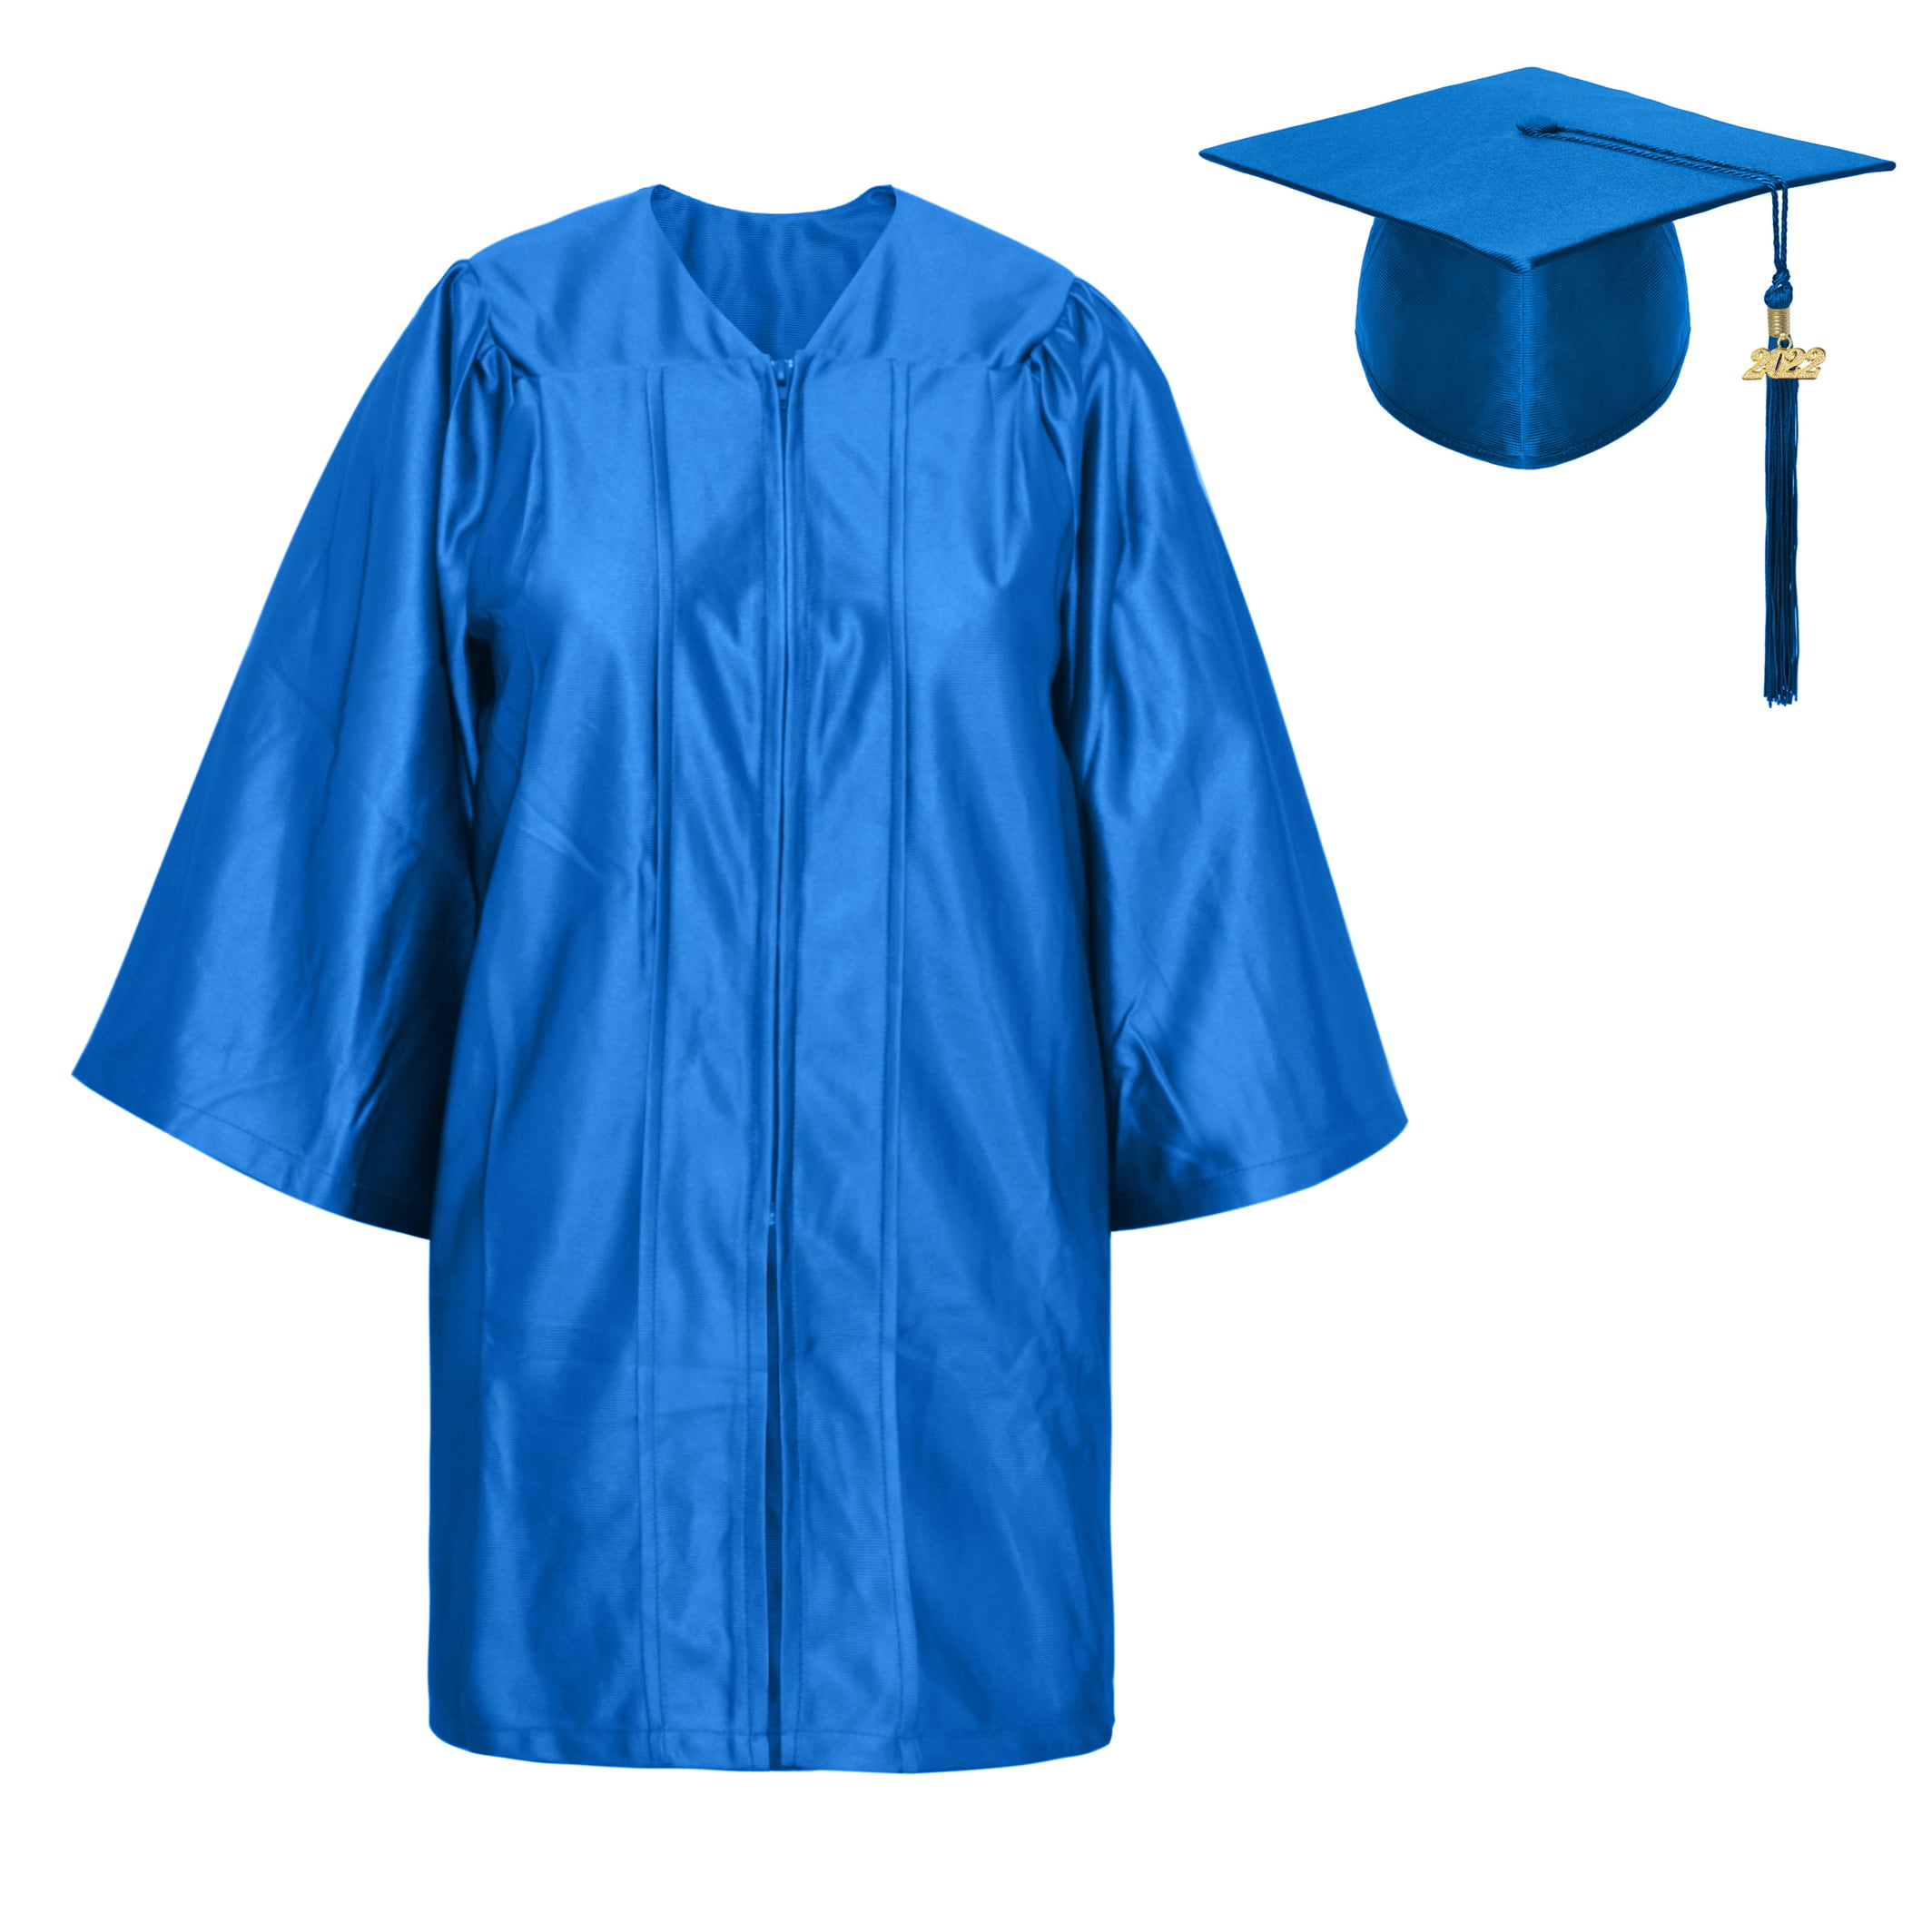 URYY Kindergarten & Preschool Graduation Gown Cap Set With Tassel For Kids 